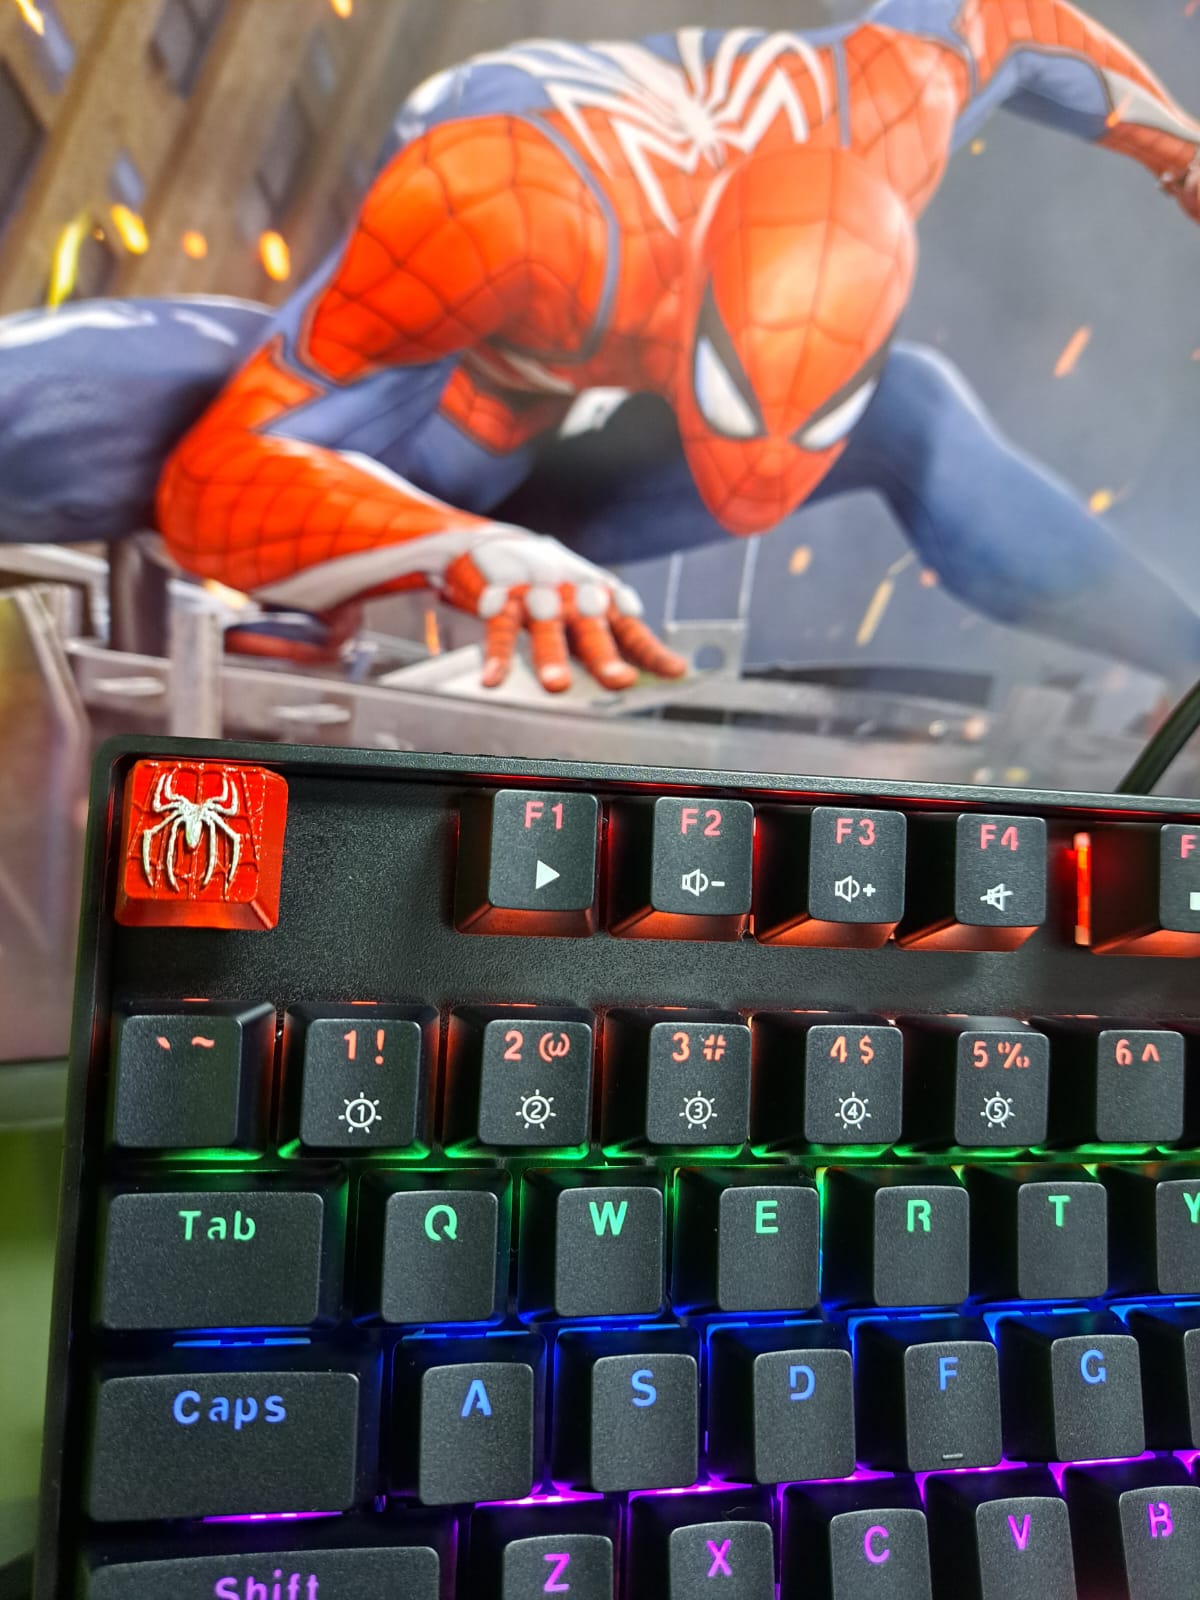 Se hacen teclas personalizadas de Spider-Man, teclas personalizadas para teclados, teclado gamer, teclas de Spider-Man, teclas en impresion 3d